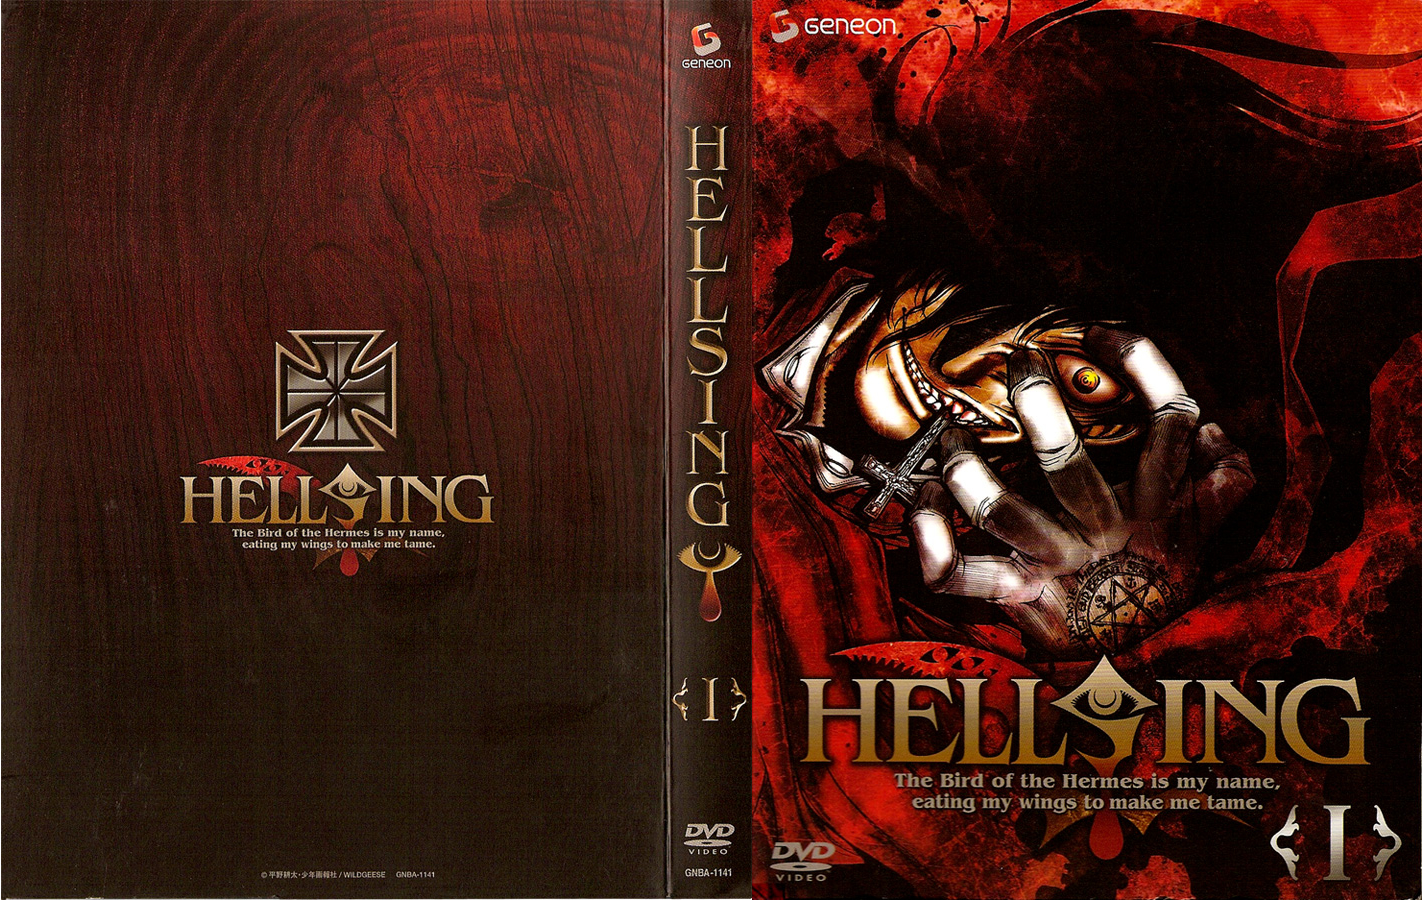 Jaquette DVD Hellsing vol 1 v2